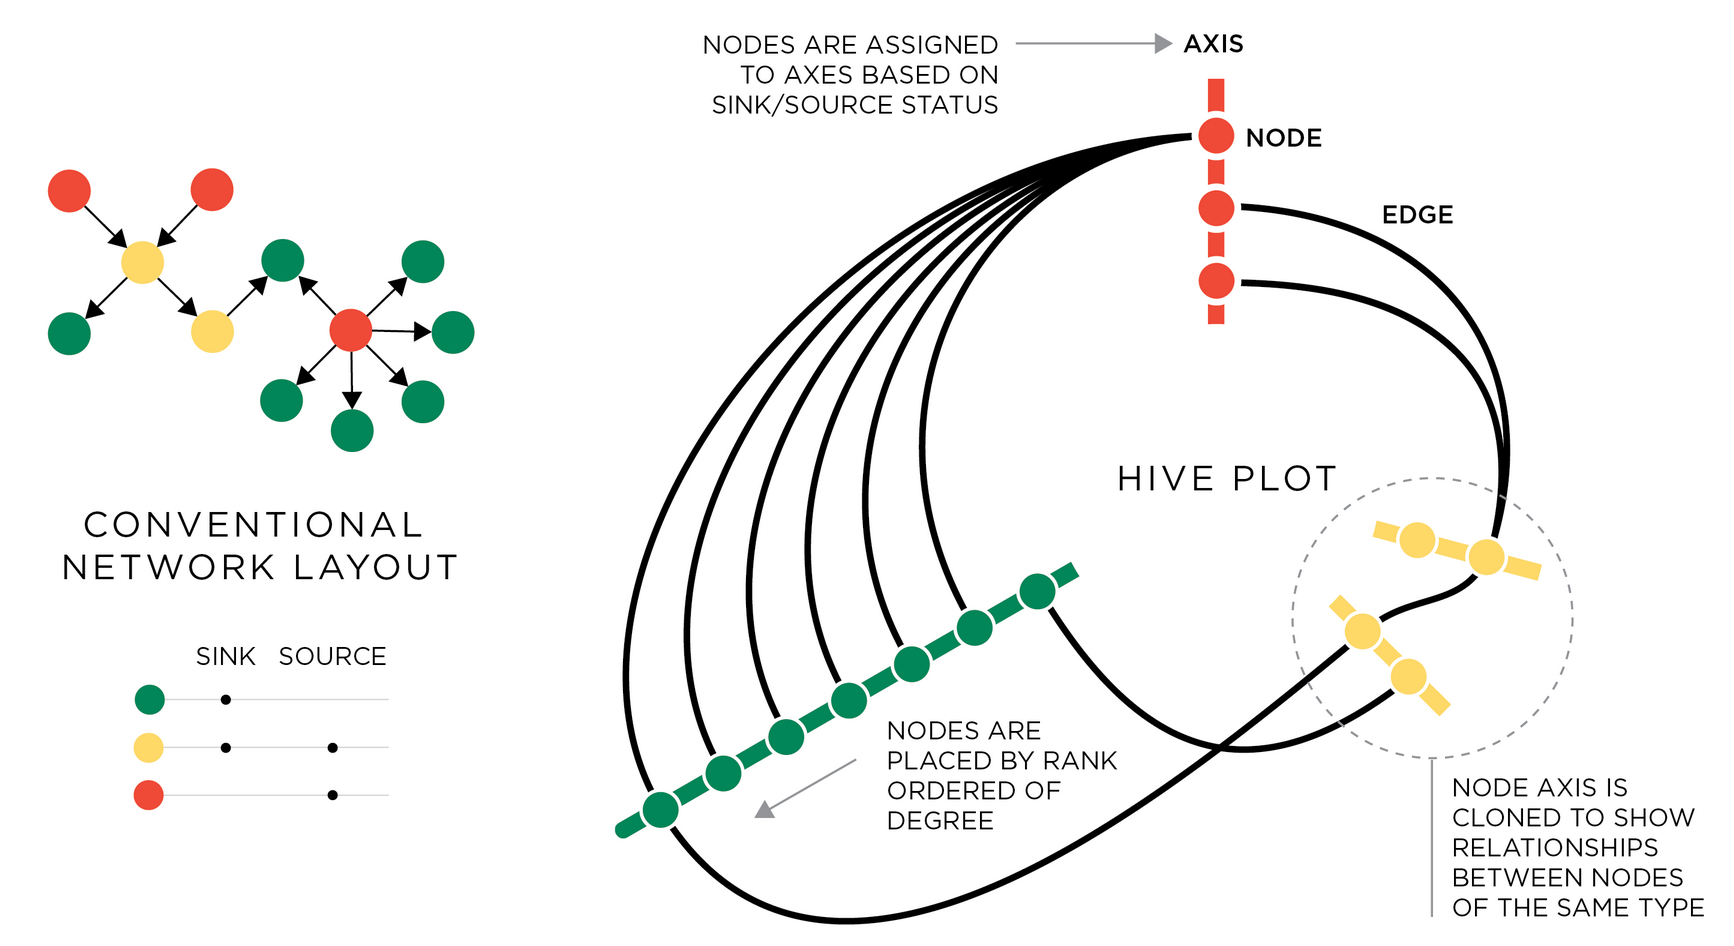 Diseño de hive_plot. Fuente: Krzywinski et al, Hive plots—rational approach to visualizing networks.